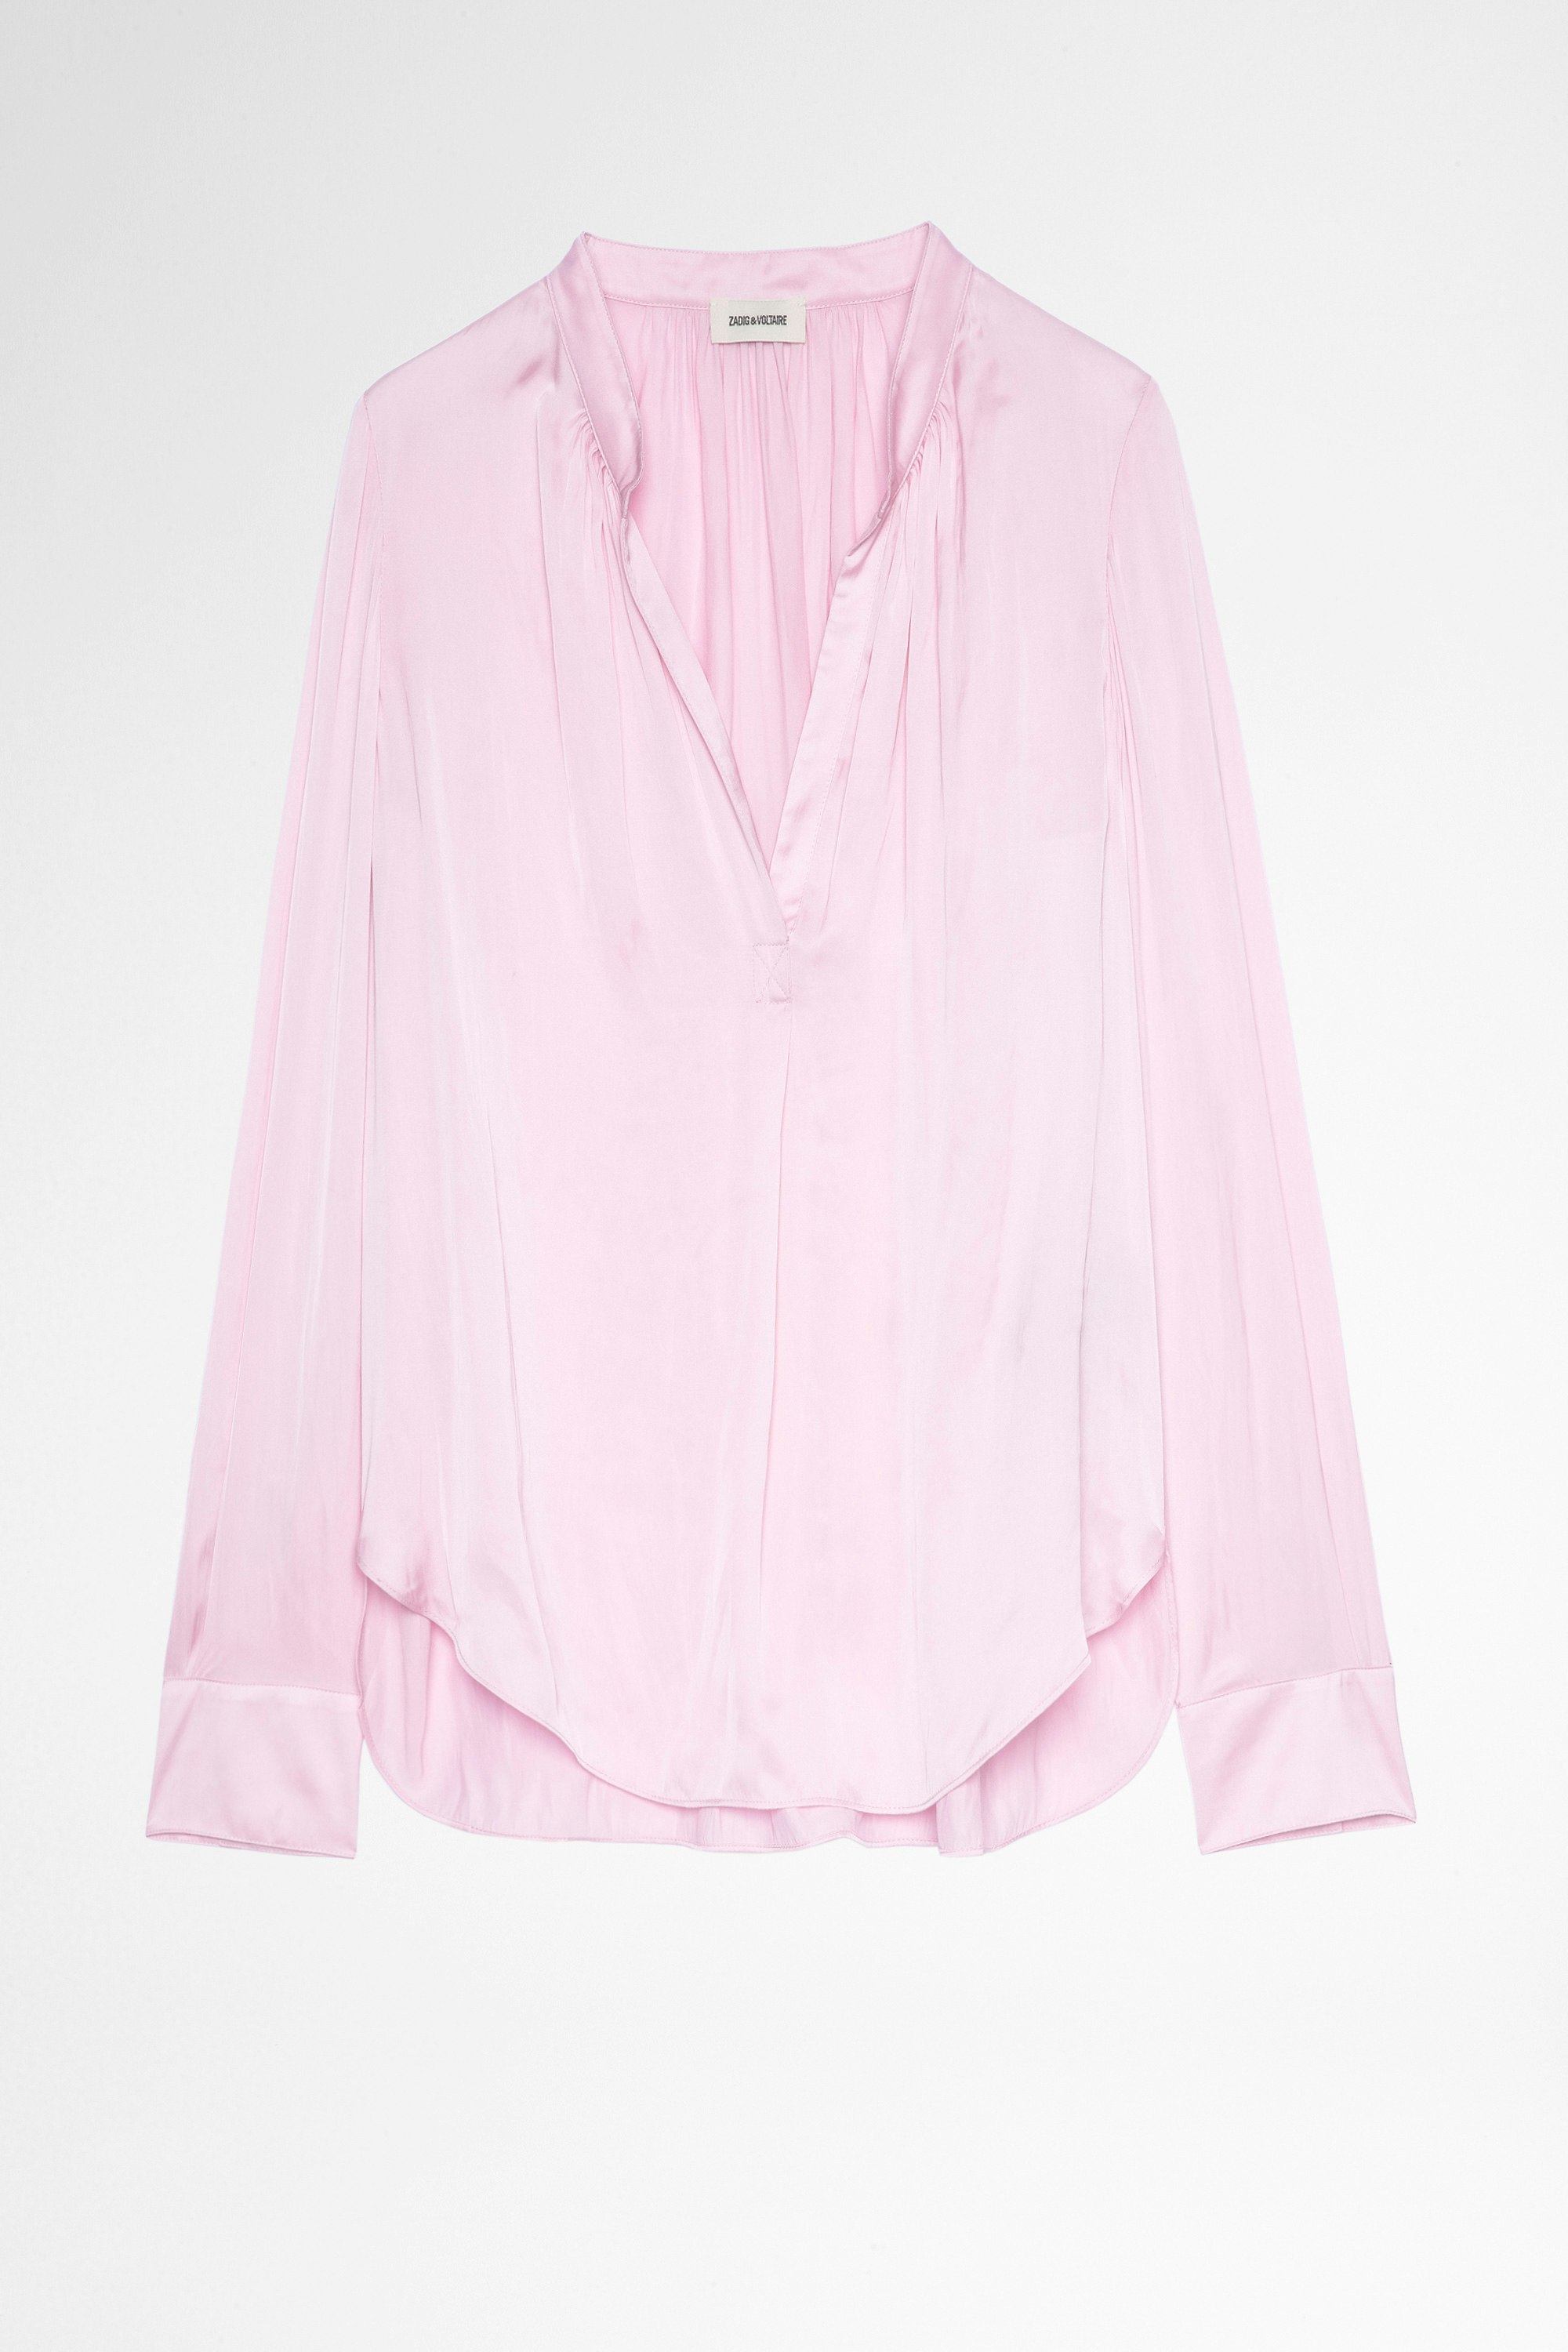 Blusón Tink Satin Camisa de satén rosa de manga larga de mujer